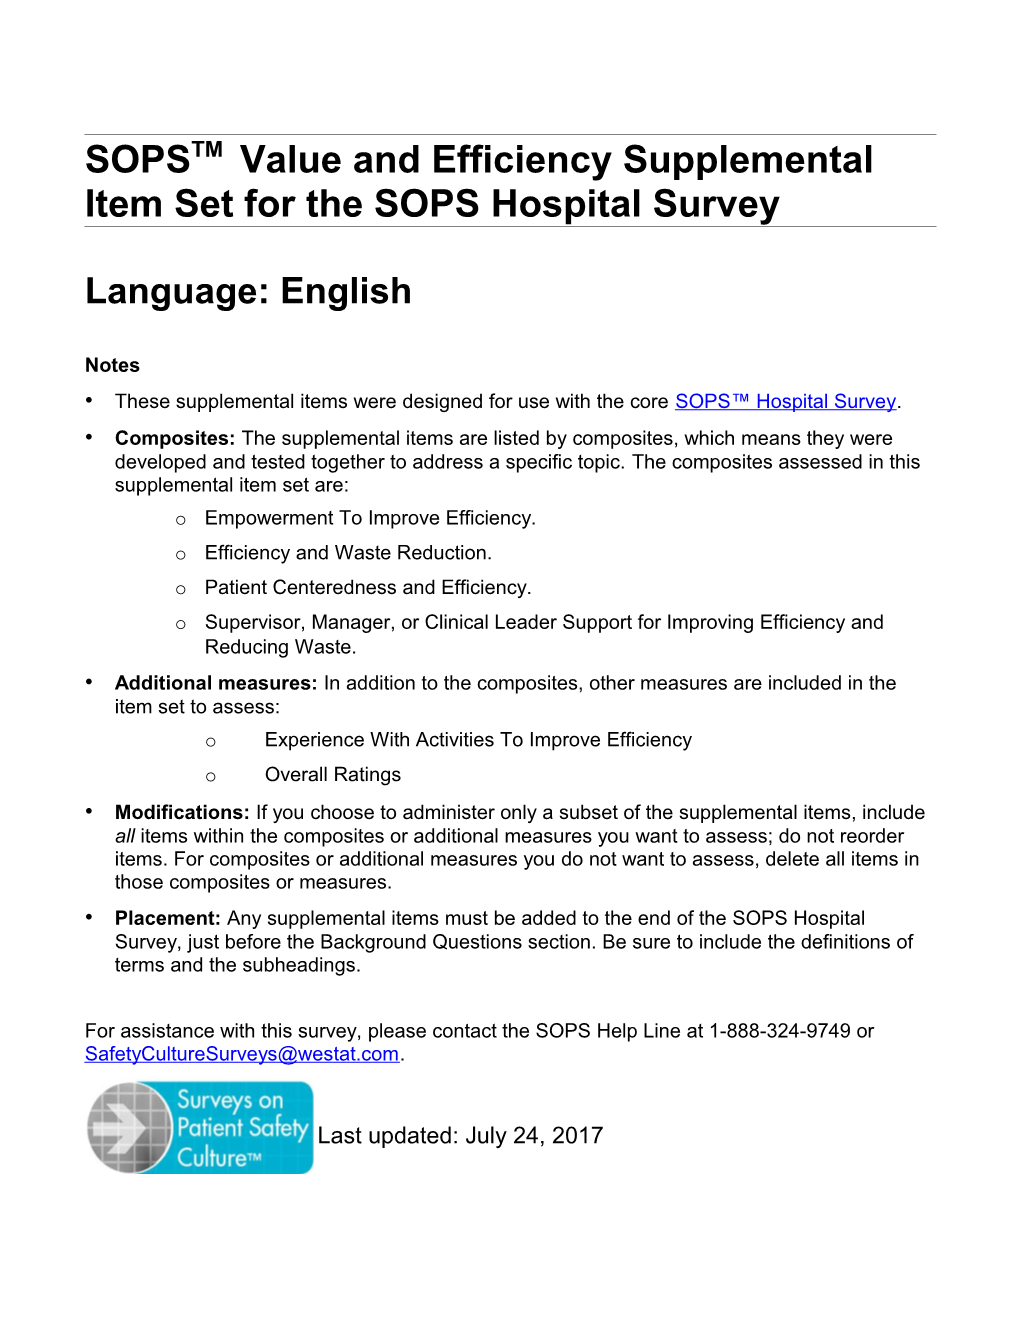 SOPSTM Value and Efficiency Supplemental Item Set for the SOPS Hospital Survey